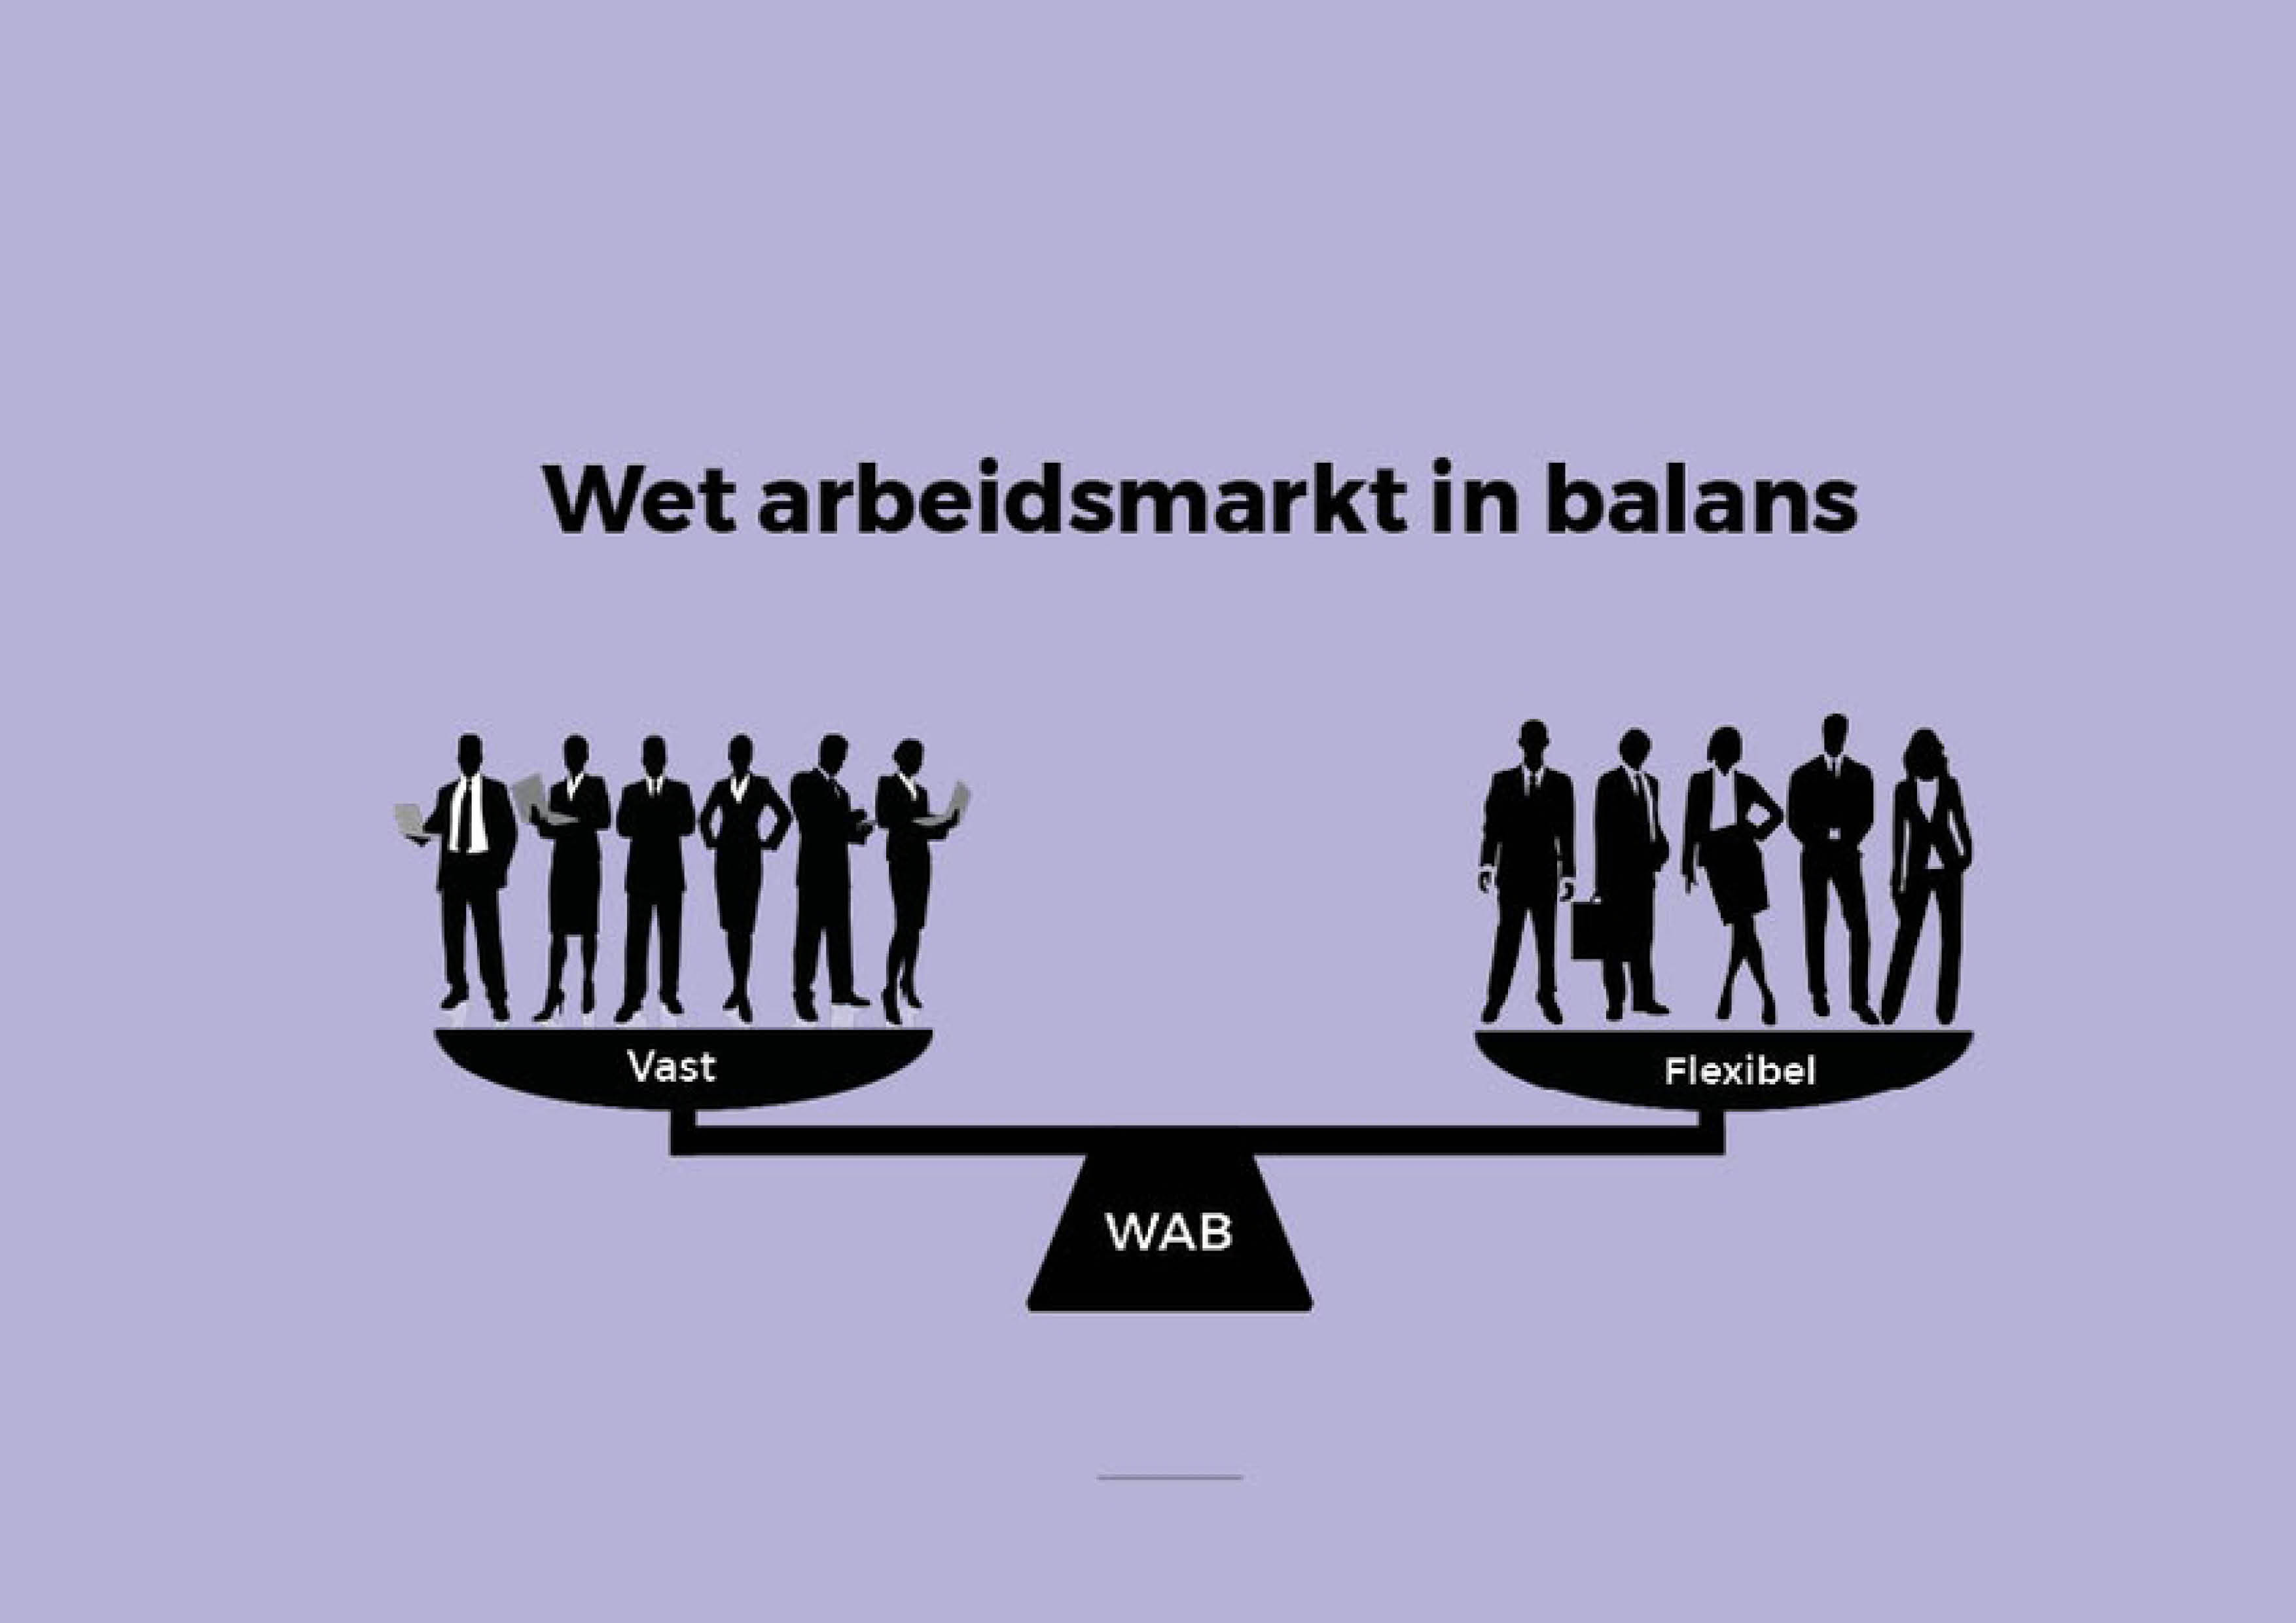 De Wet Arbeidsmarkt in Balans (WAB)